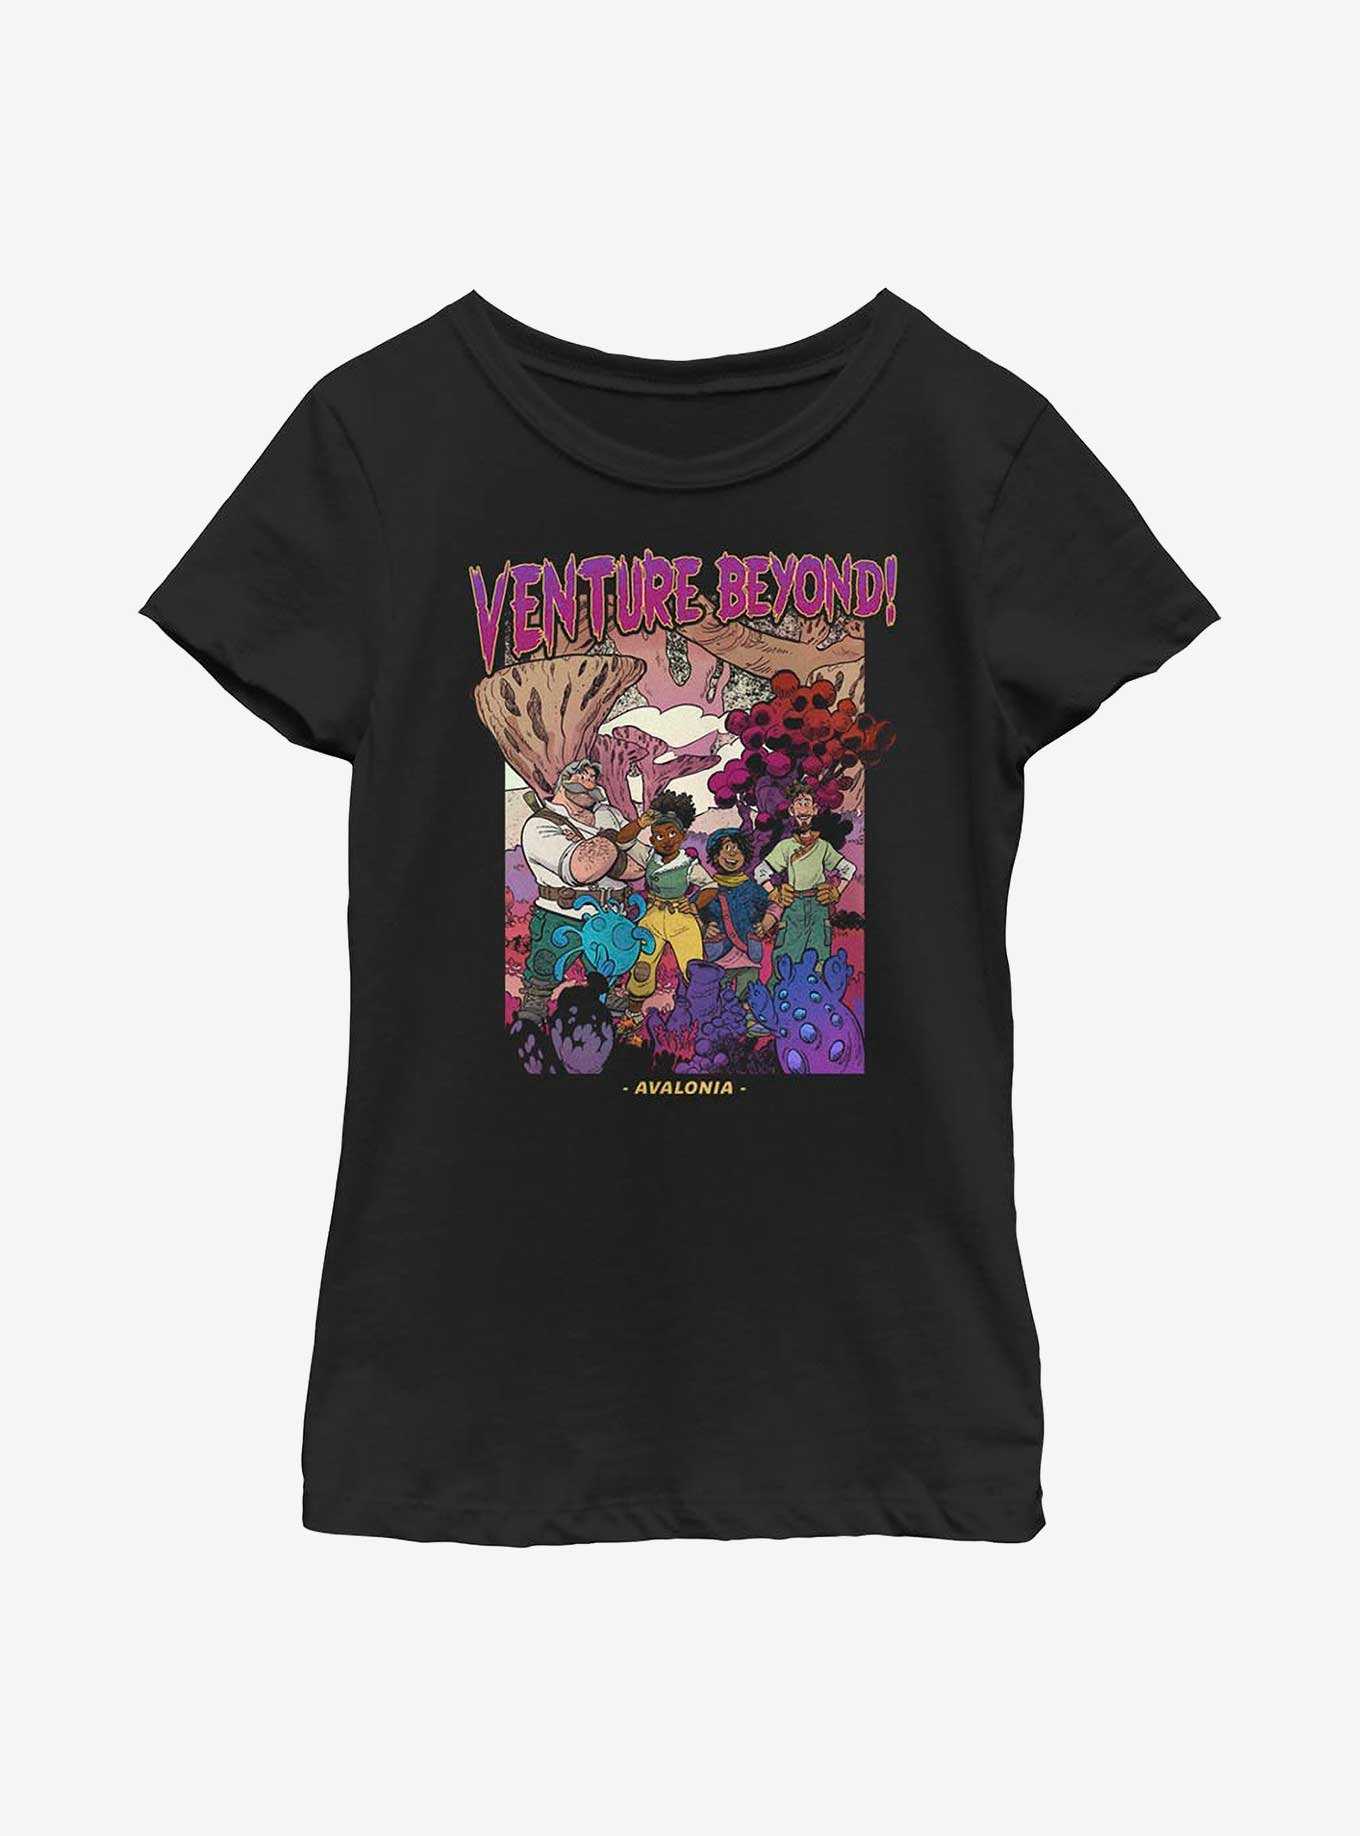 Disney Strange World Venture Beyond! Youth Girls T-Shirt, , hi-res